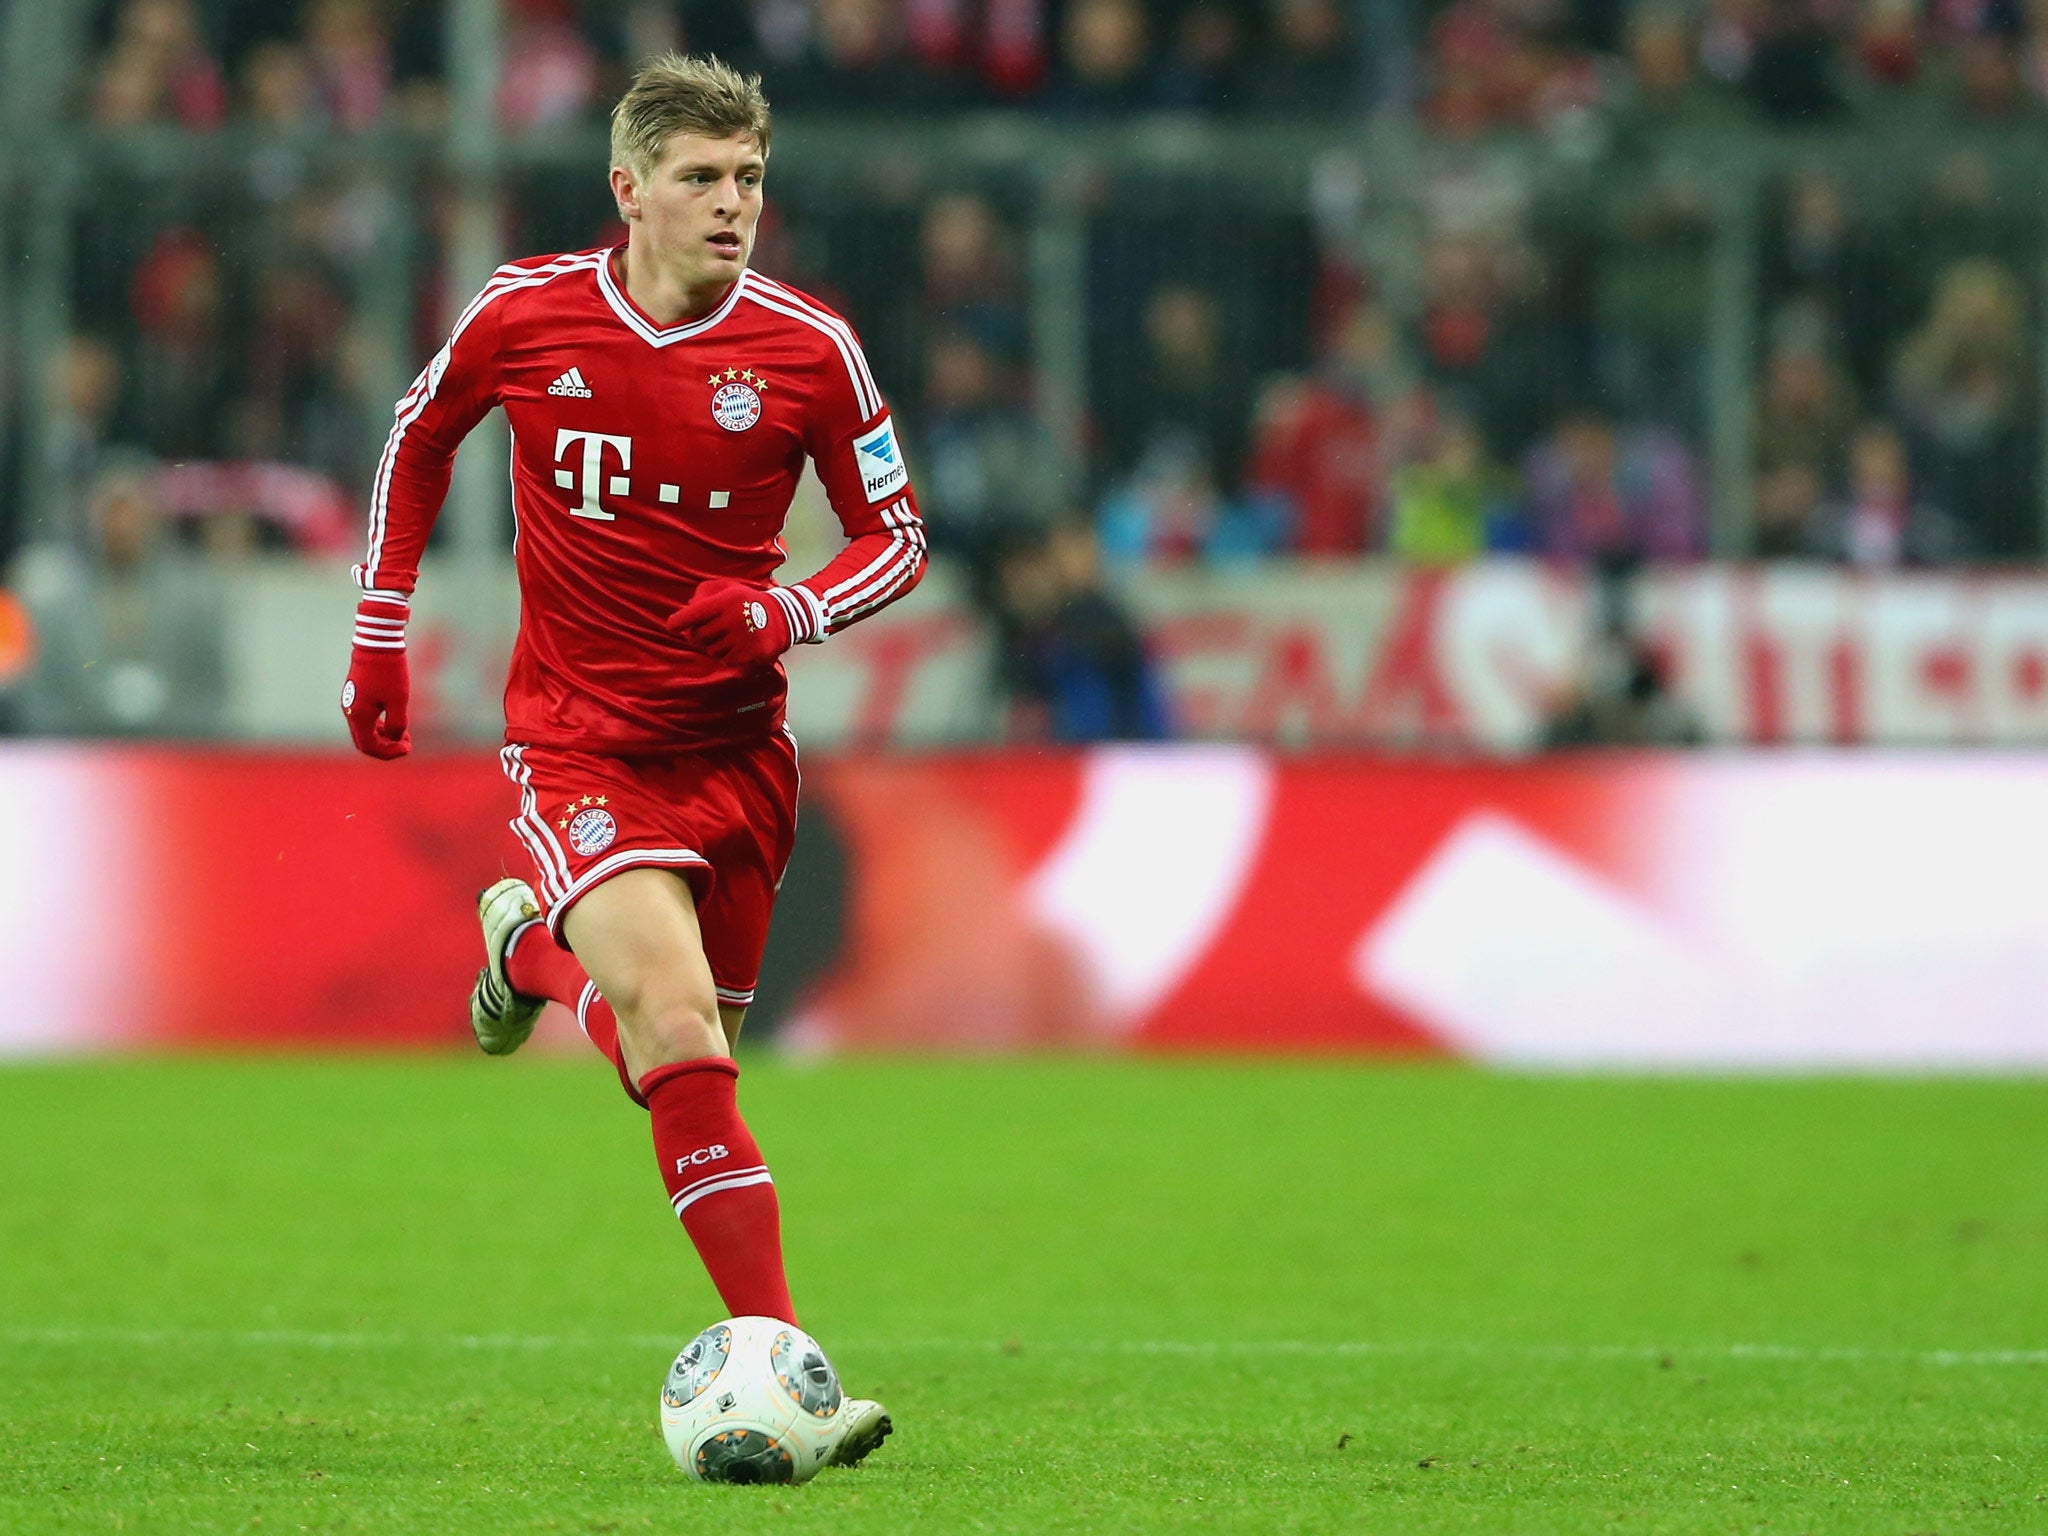 Bayern Munich midfielder Toni Kroos